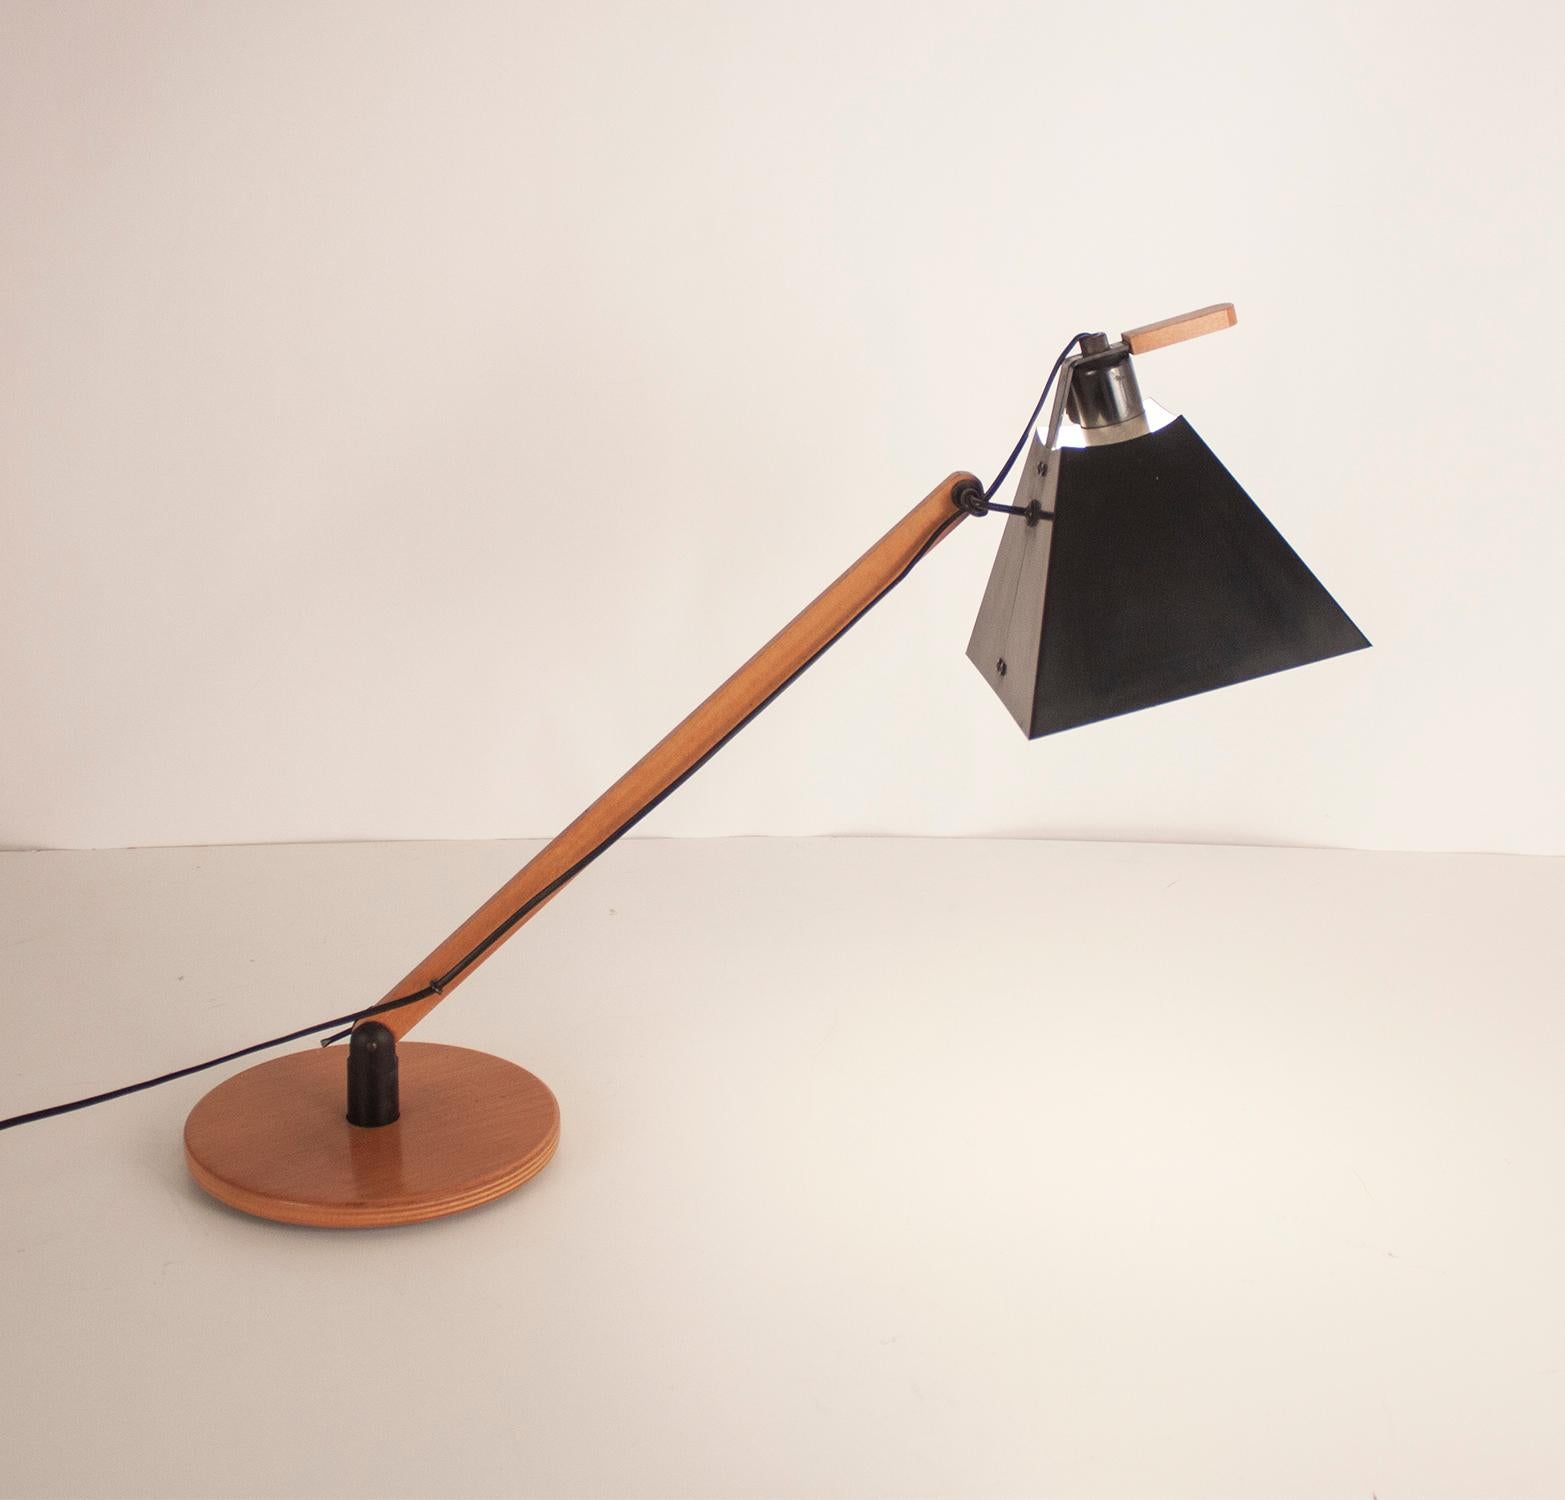 En 1974, les designers barcelonais Gemma Bernal et Ramón Isern ont conçu ce système innovant de lampes édité par Tramo.

Dans cette version de table, un abat-jour carré-conique en aluminium laqué noir est fixé à une base circulaire par